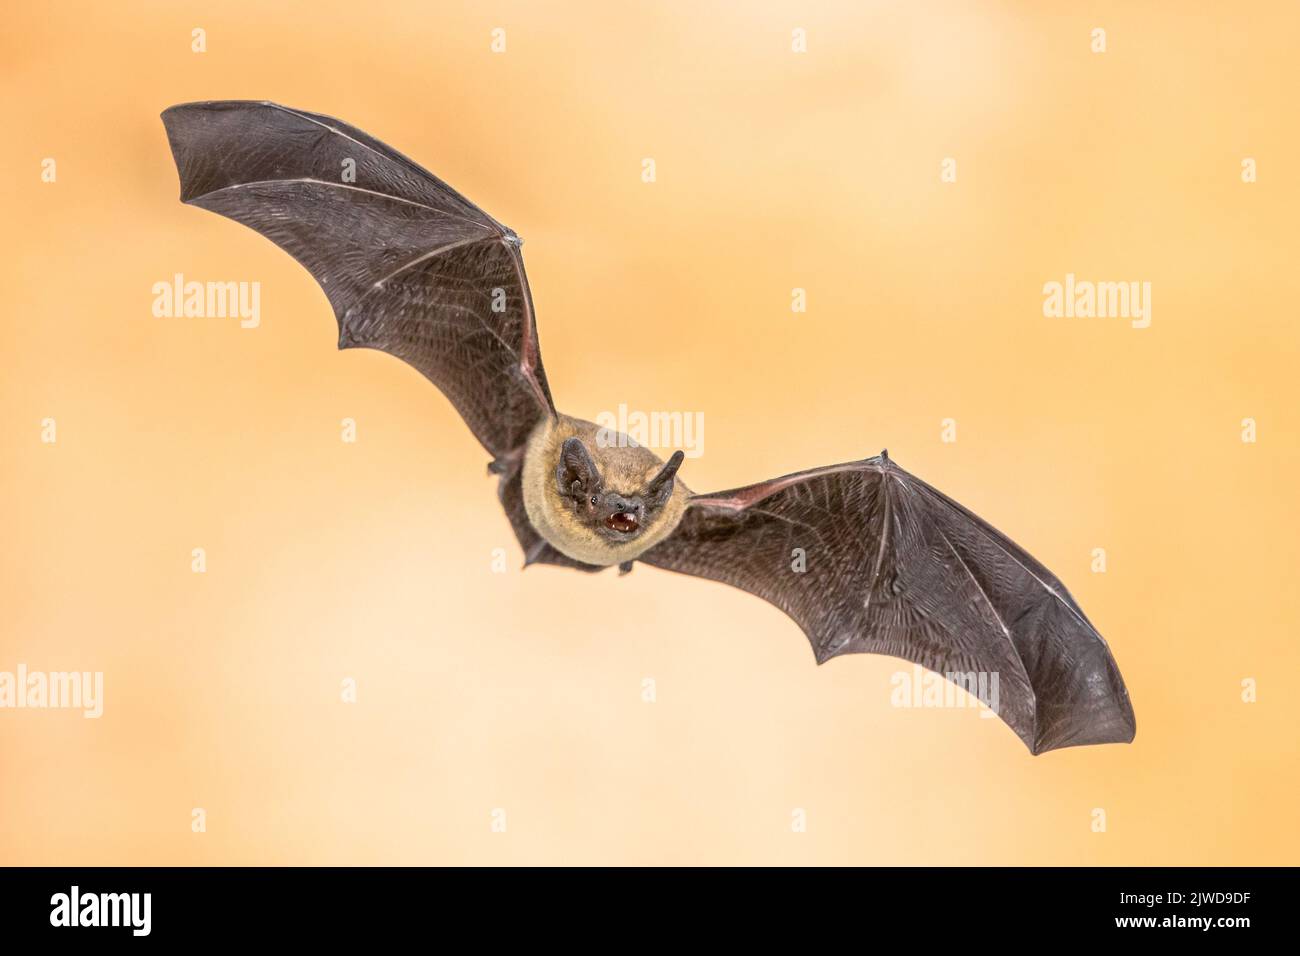 Pipistrelle bat (Pipistrellus pipistrellus) gros plan de l'animal volant sur le grenier de la maison sur fond vif. Cette espèce est connue pour le roosting et liv Banque D'Images